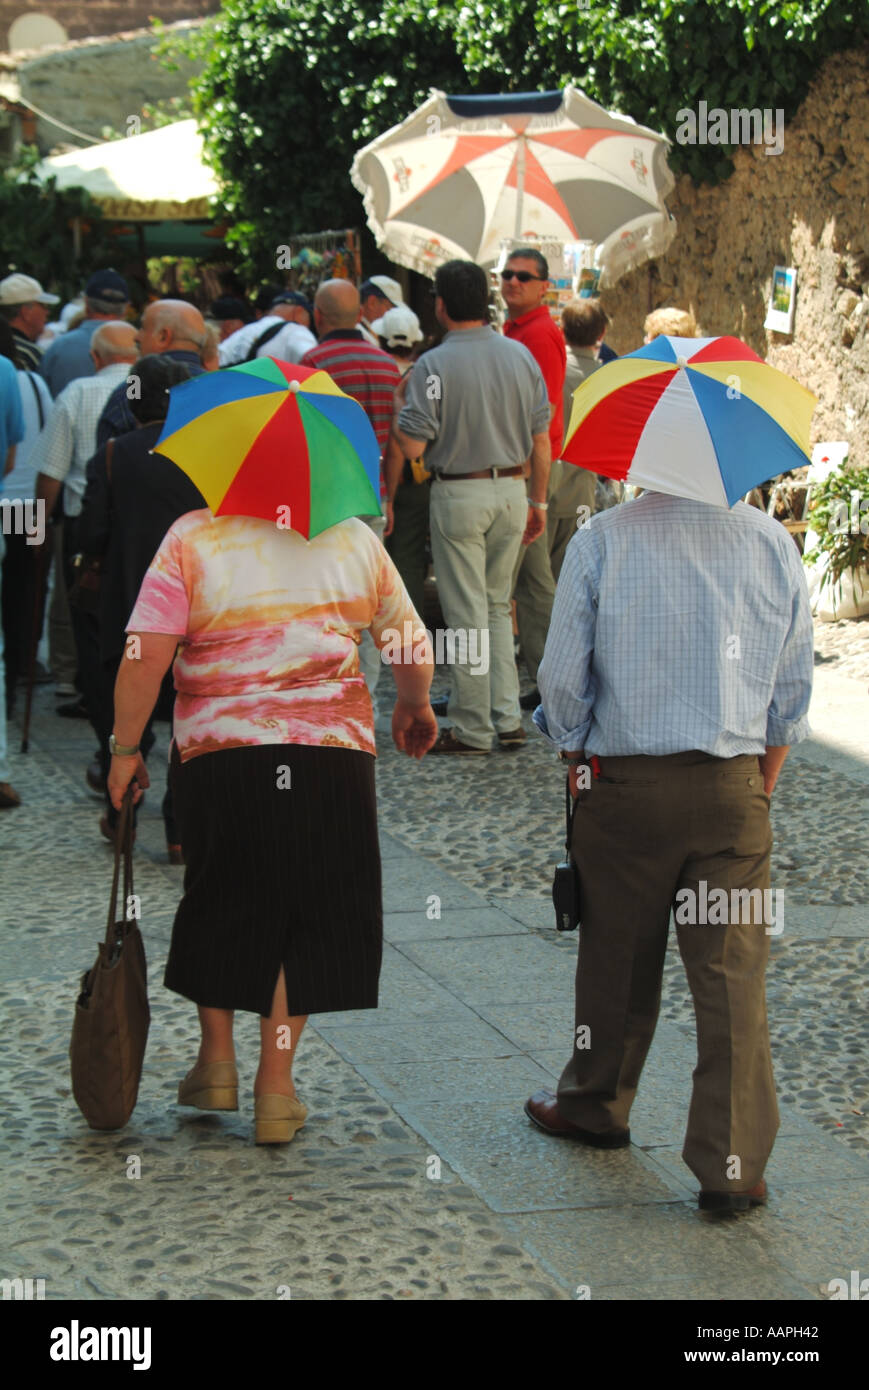 Umbrella umbrellas unusual parasol hi-res stock photography and images -  Alamy